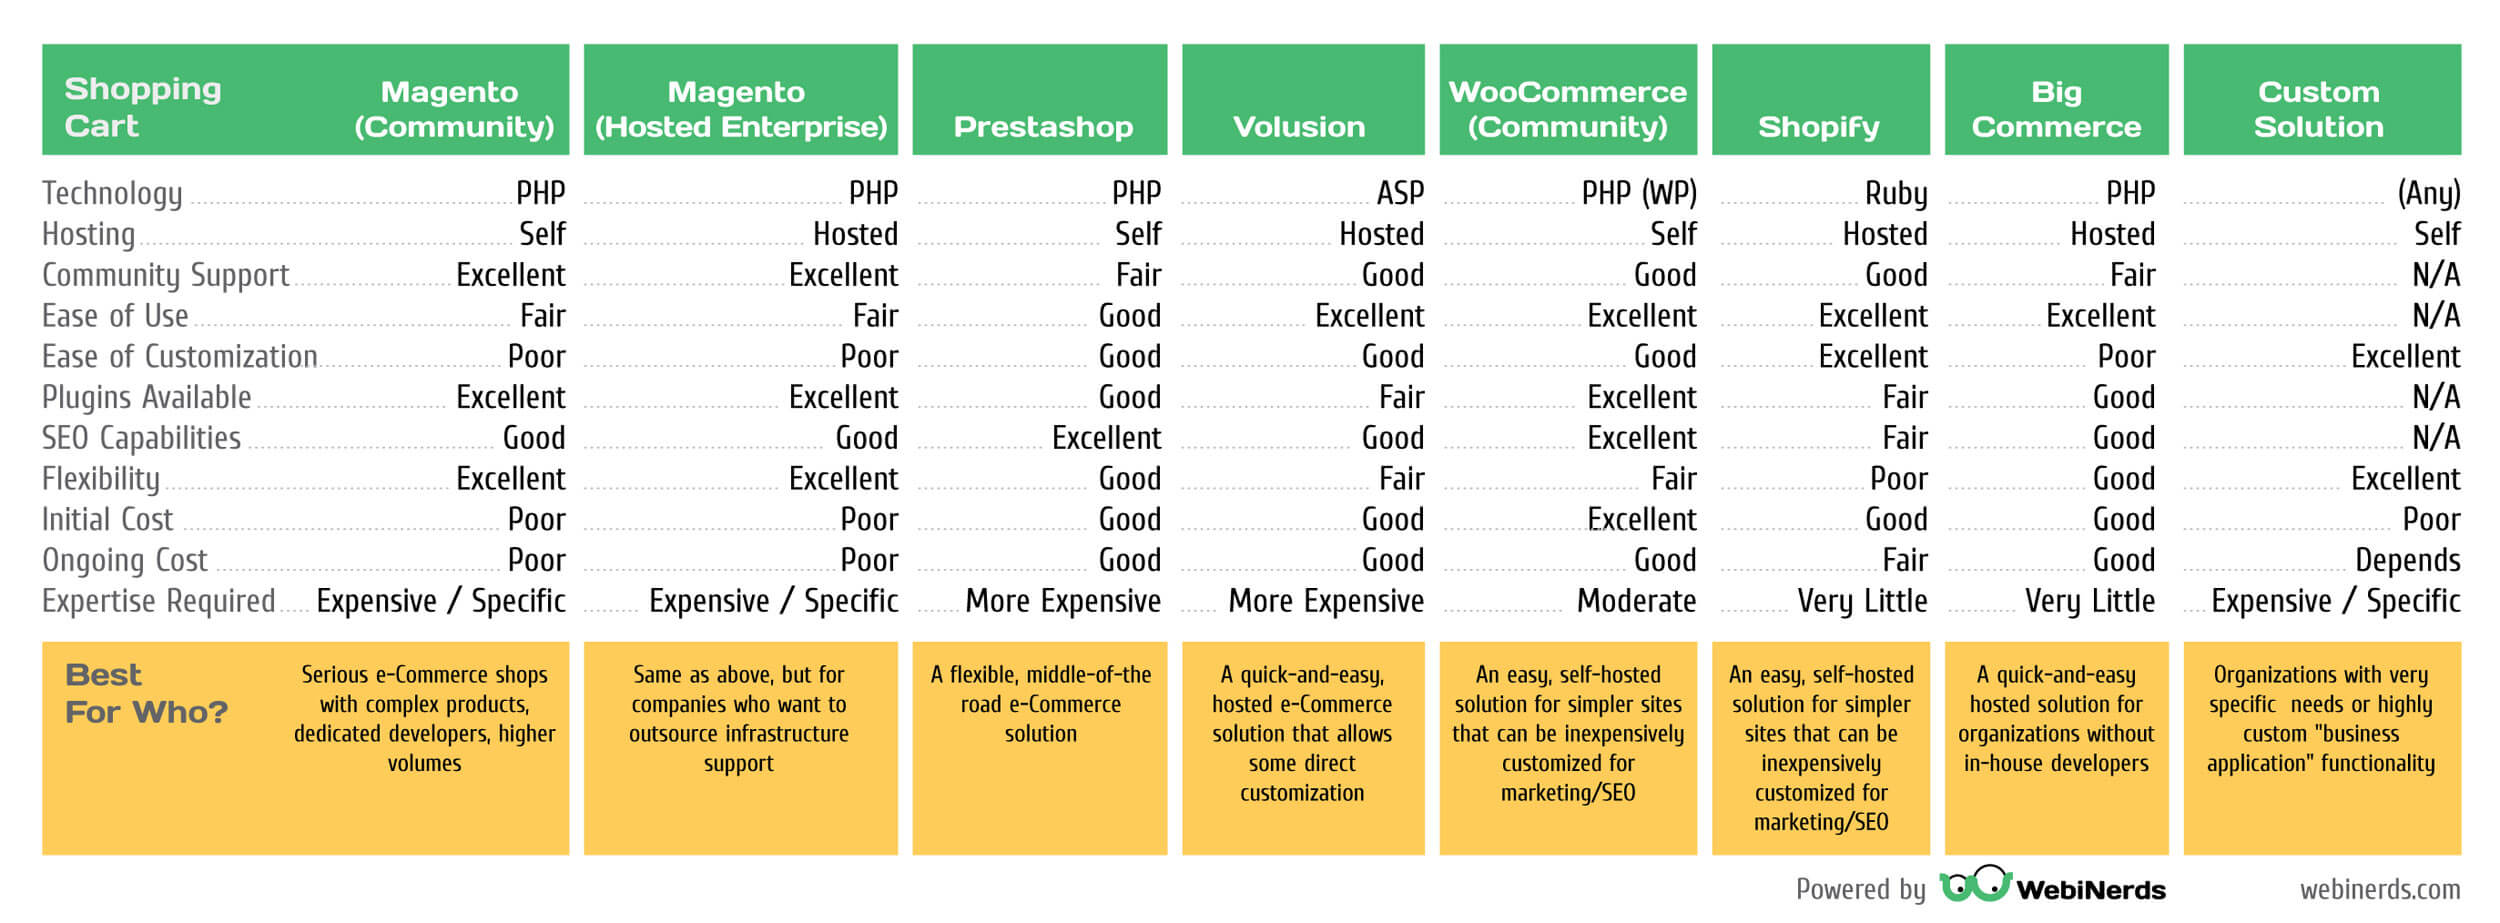 Webinerds e-commerce solution comparison chart